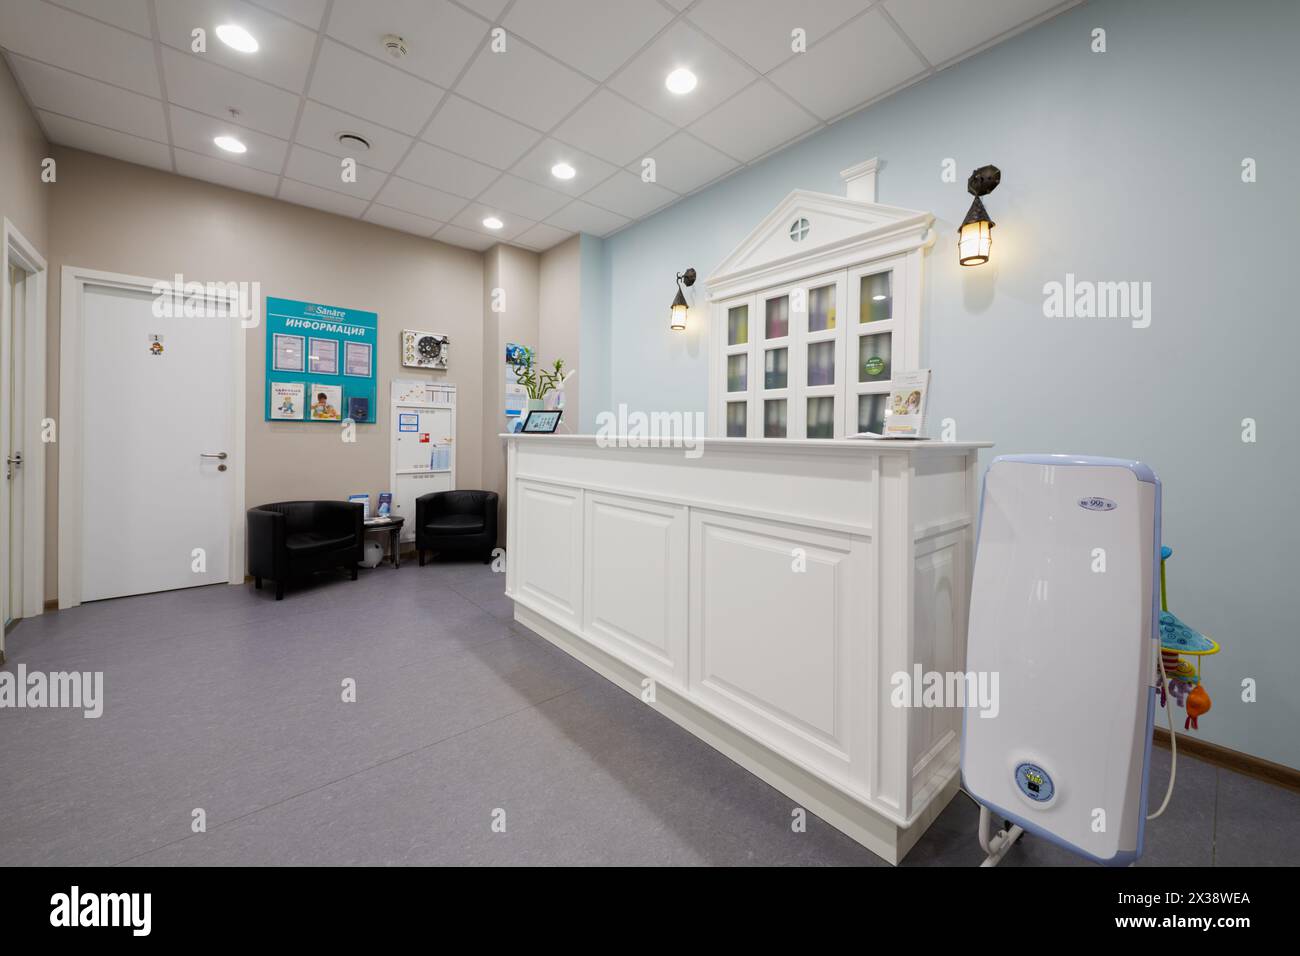 MOSCOU, RUSSIE - OCT 19, 2016 : intérieur de la salle de réception du Centre médical pour enfants Sanare pour les enfants de tous âges de la naissance à 17 ans. Banque D'Images